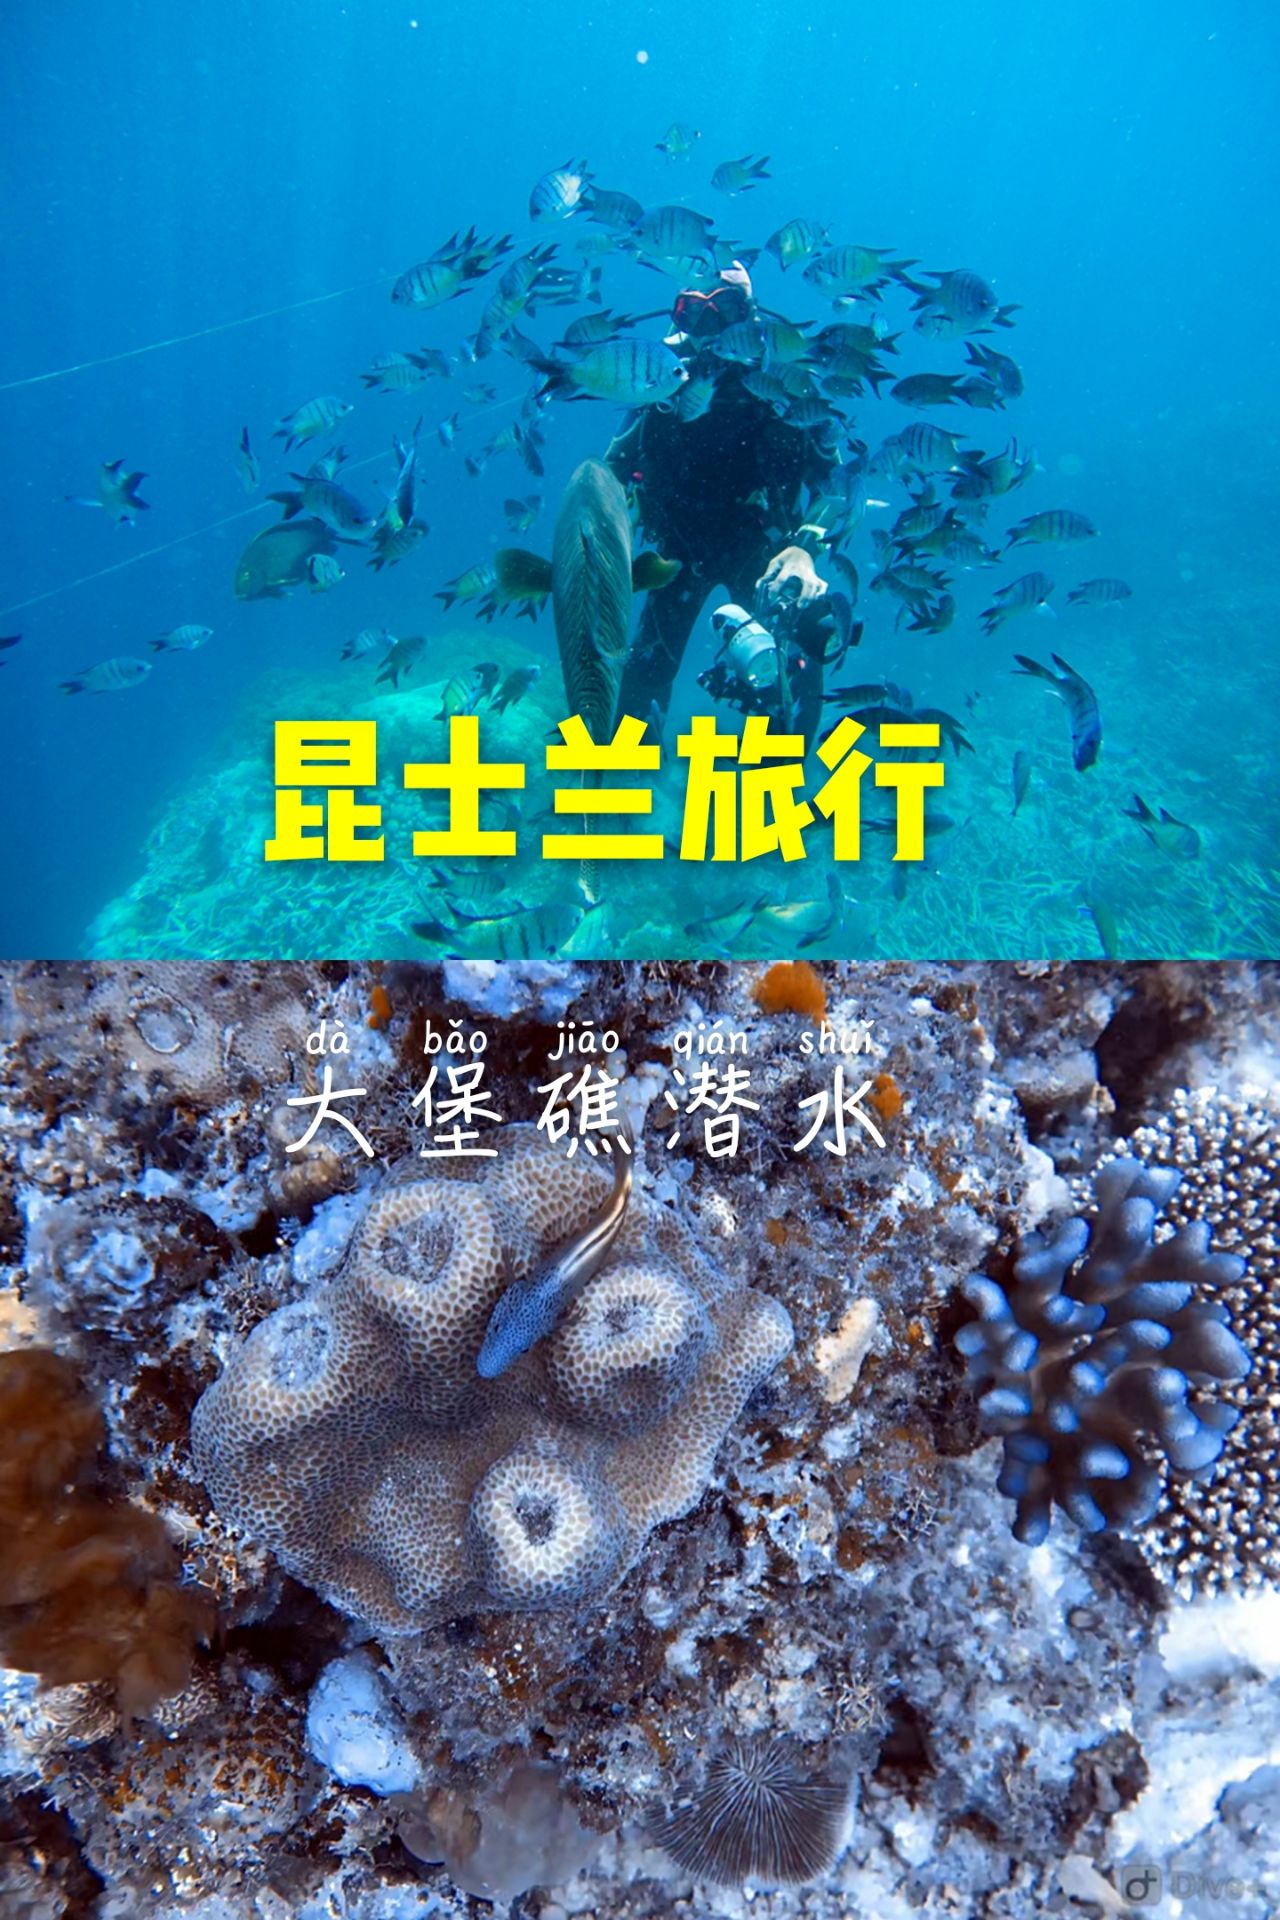 大堡礁潜水 ，被比自己还大的鱼追是什么样的感受？  在 汉密尔顿岛 到大堡礁平台，不管是飞机去船回，